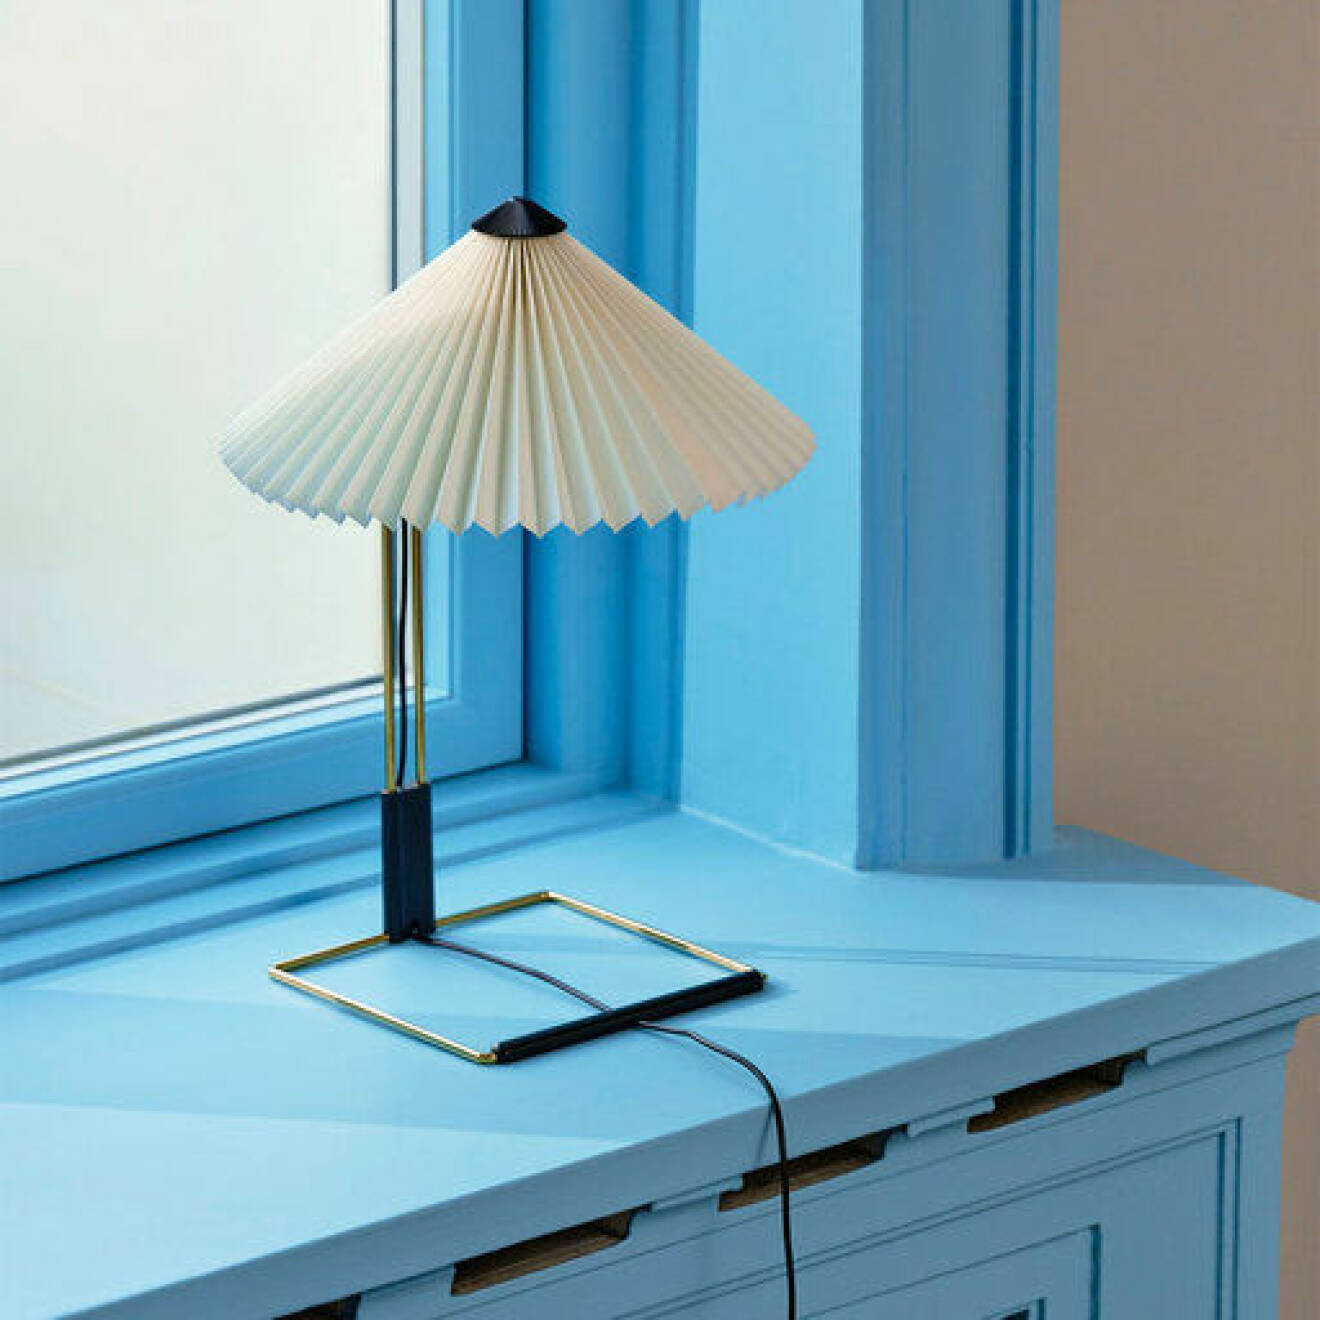 bordslampa till fönster